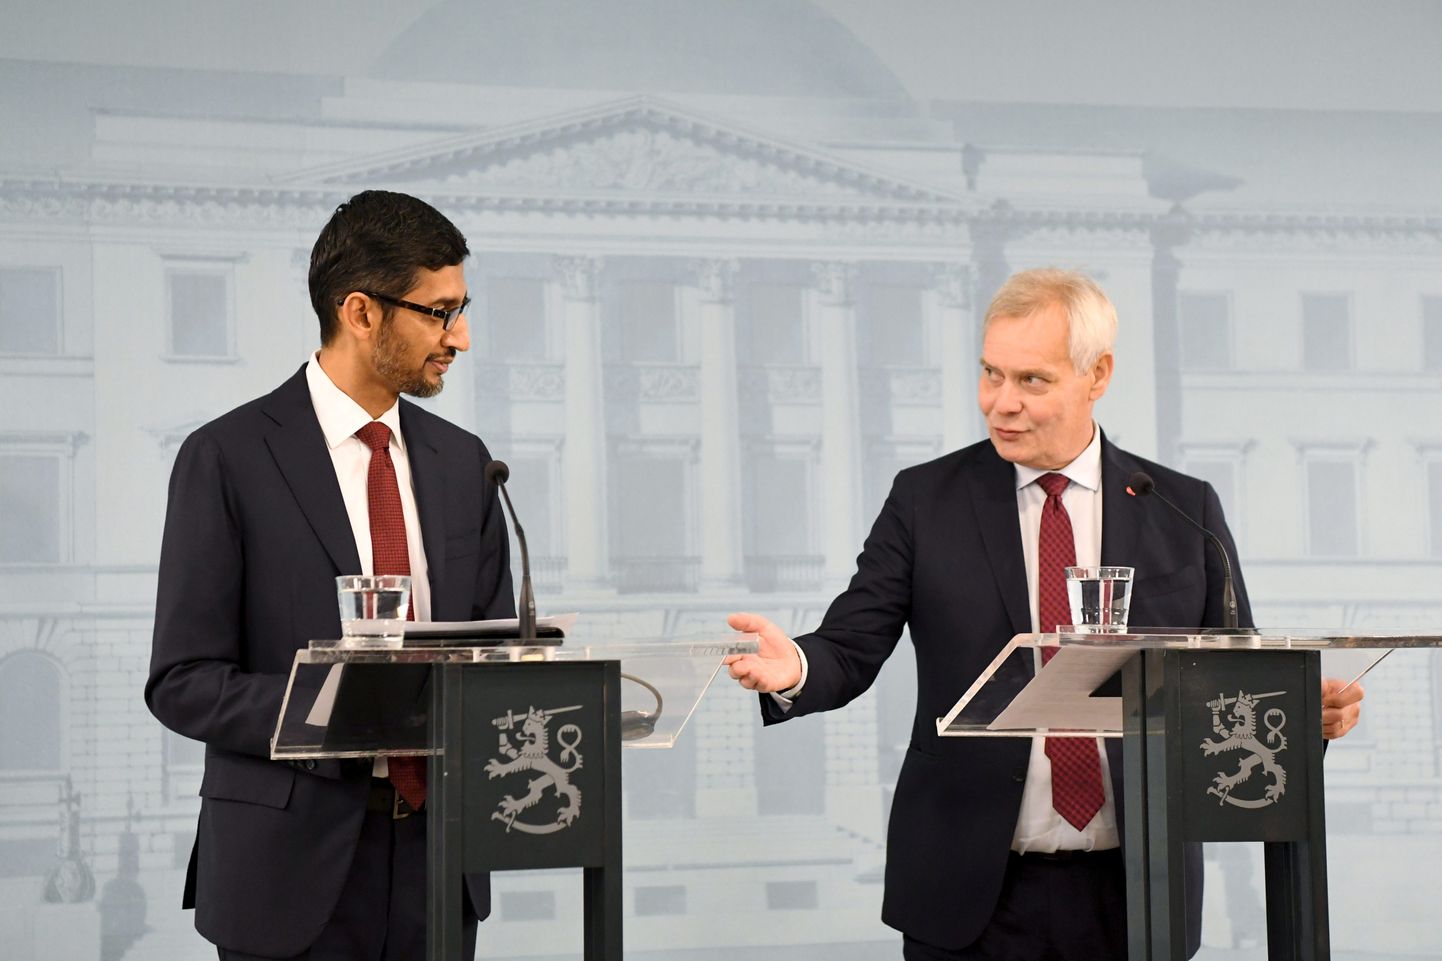 Soome peaminister Antti Rinne (paremal) ja Google-i tegevjuht Sundar Pichai täna pressikonverentsil teatamas suurettevõte lisainvesteeringutest Soome.